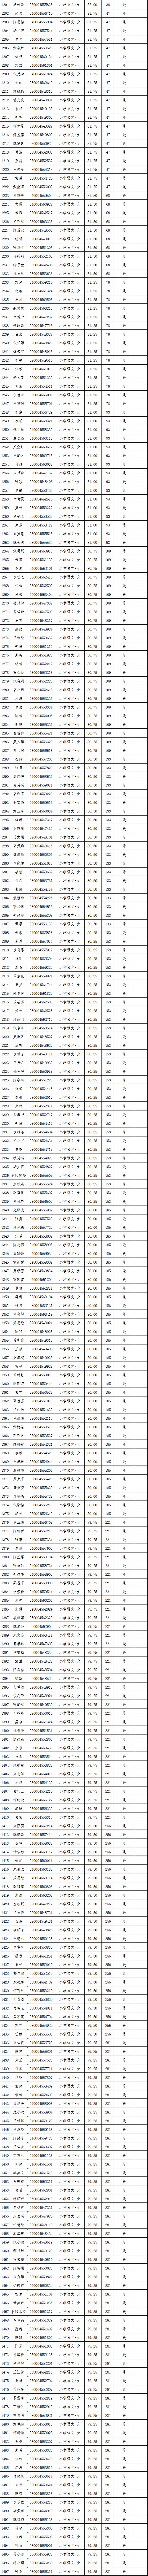 2021年长沙县第—批教师招聘入围试教人员名单公示(图16)